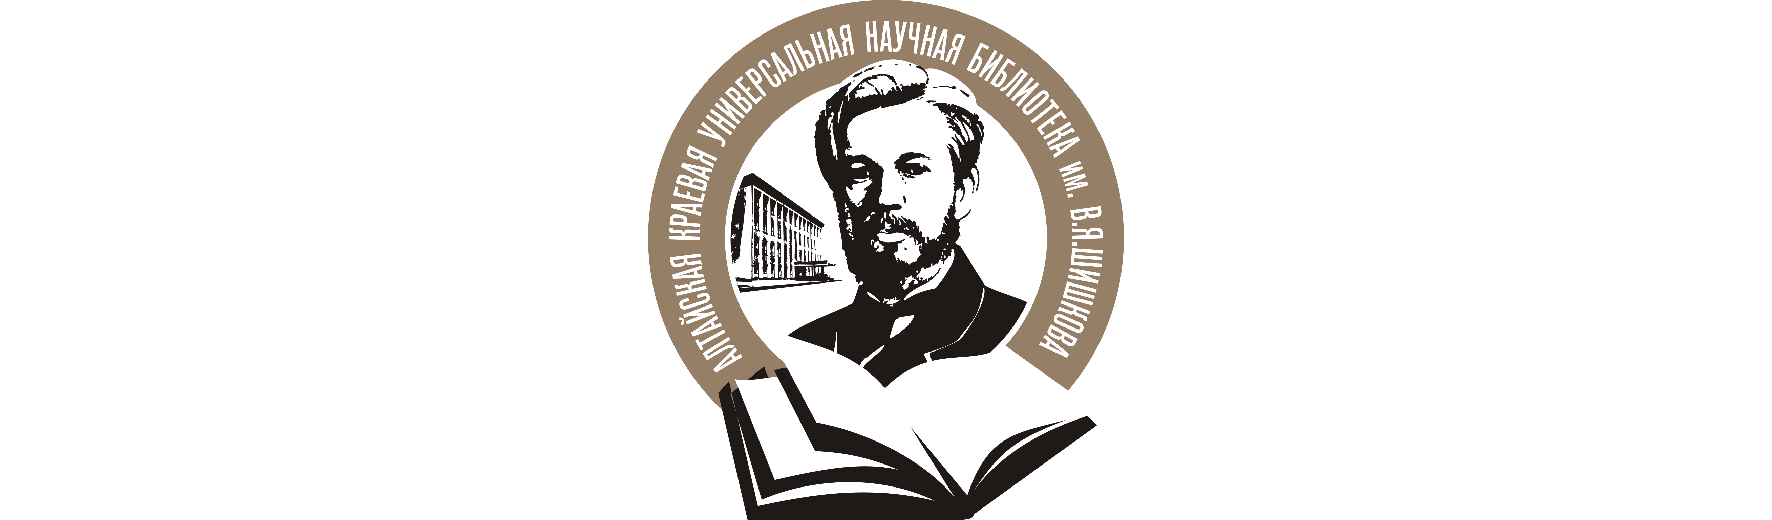 Алтайская краевая библиотека